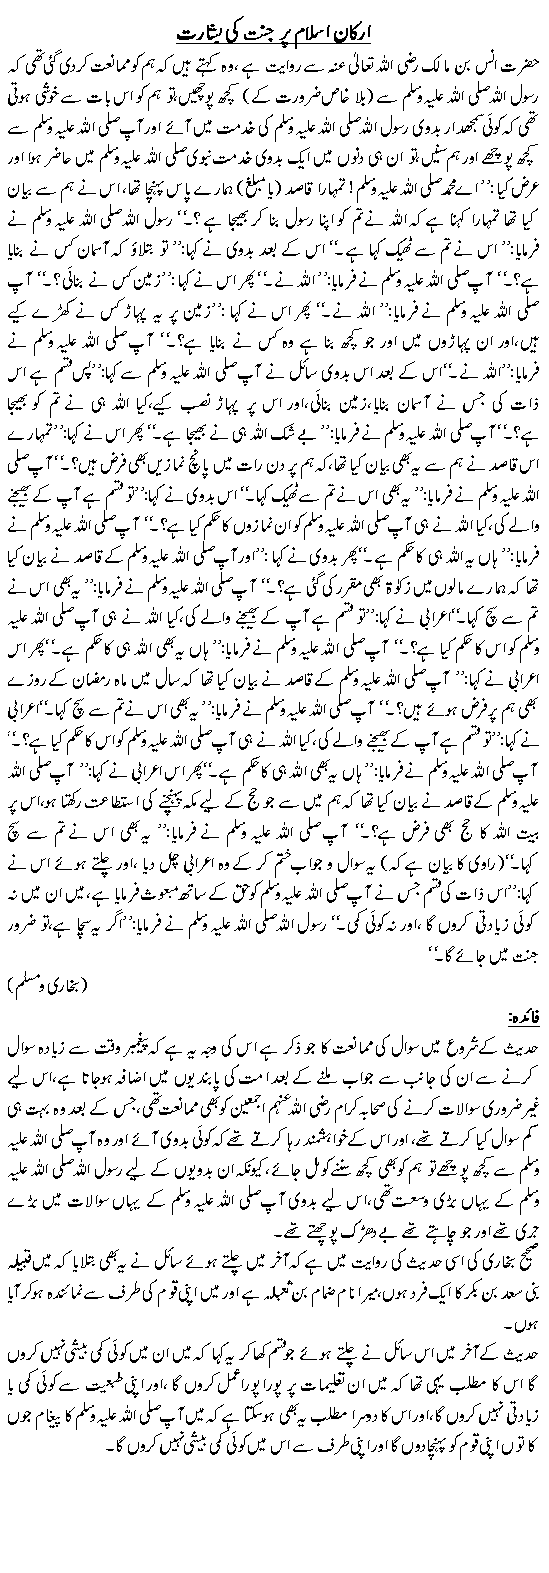 Arkan-e-Islam per Jannat ki basharat